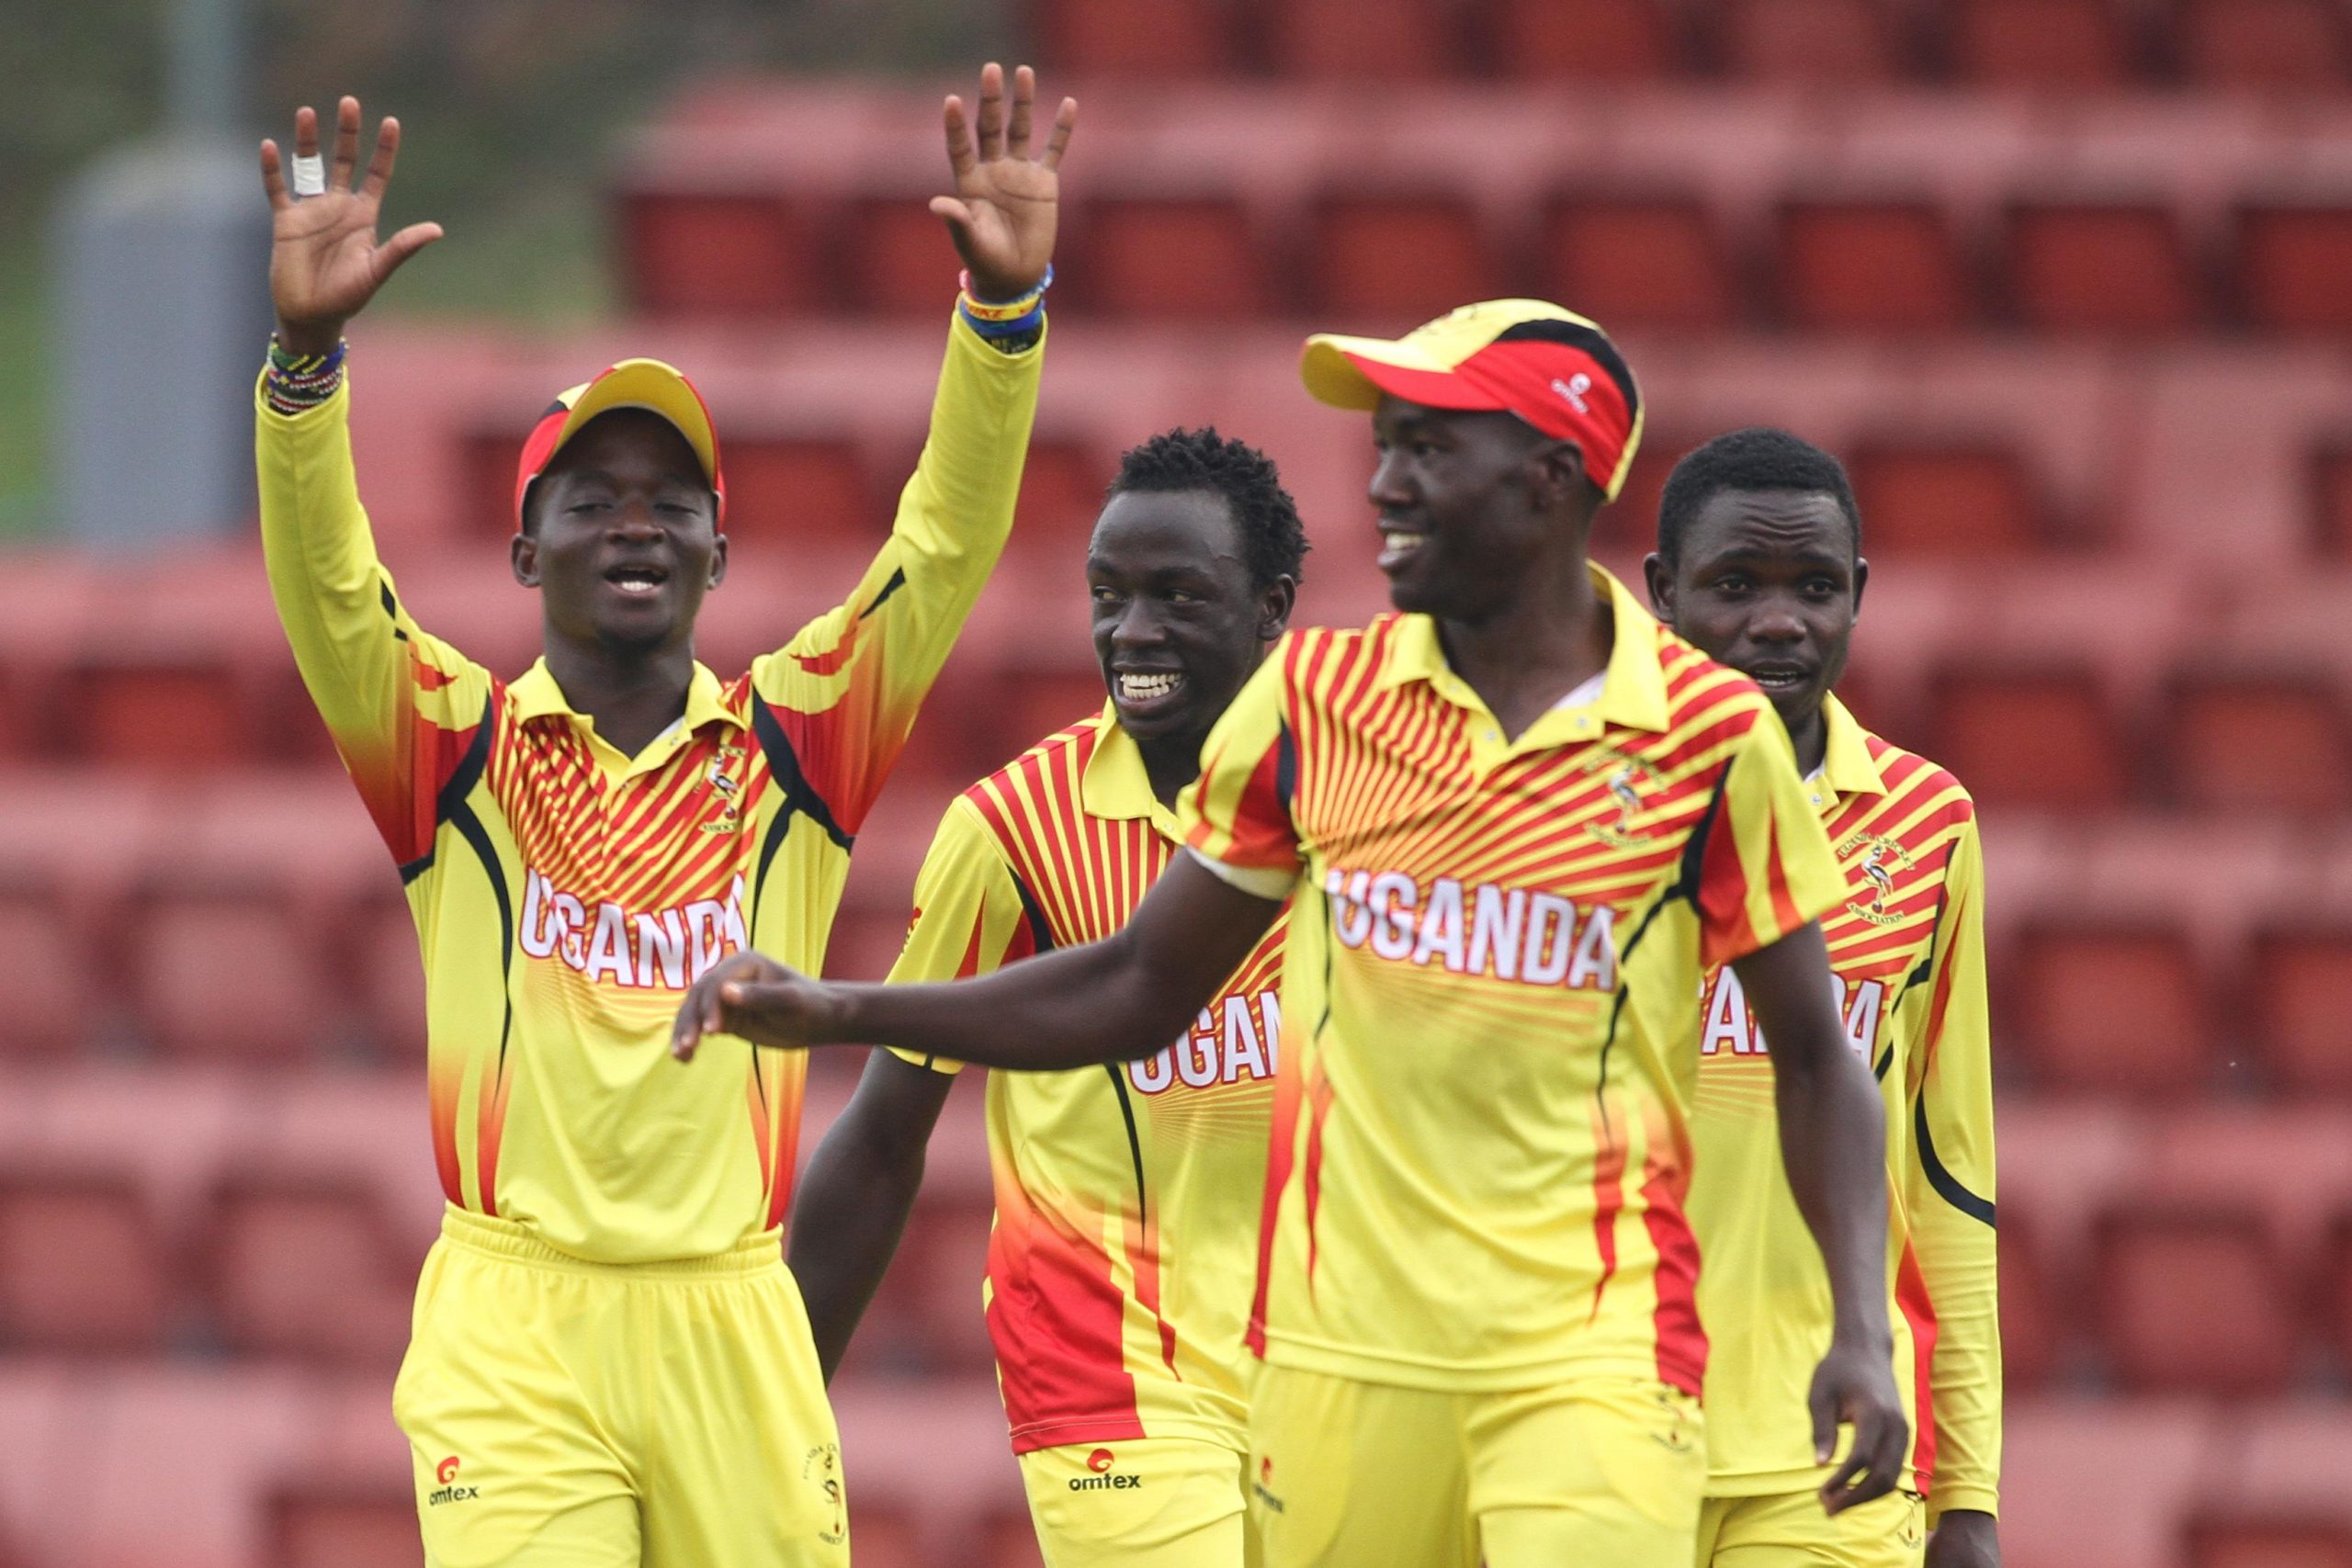 Uganda Cricket